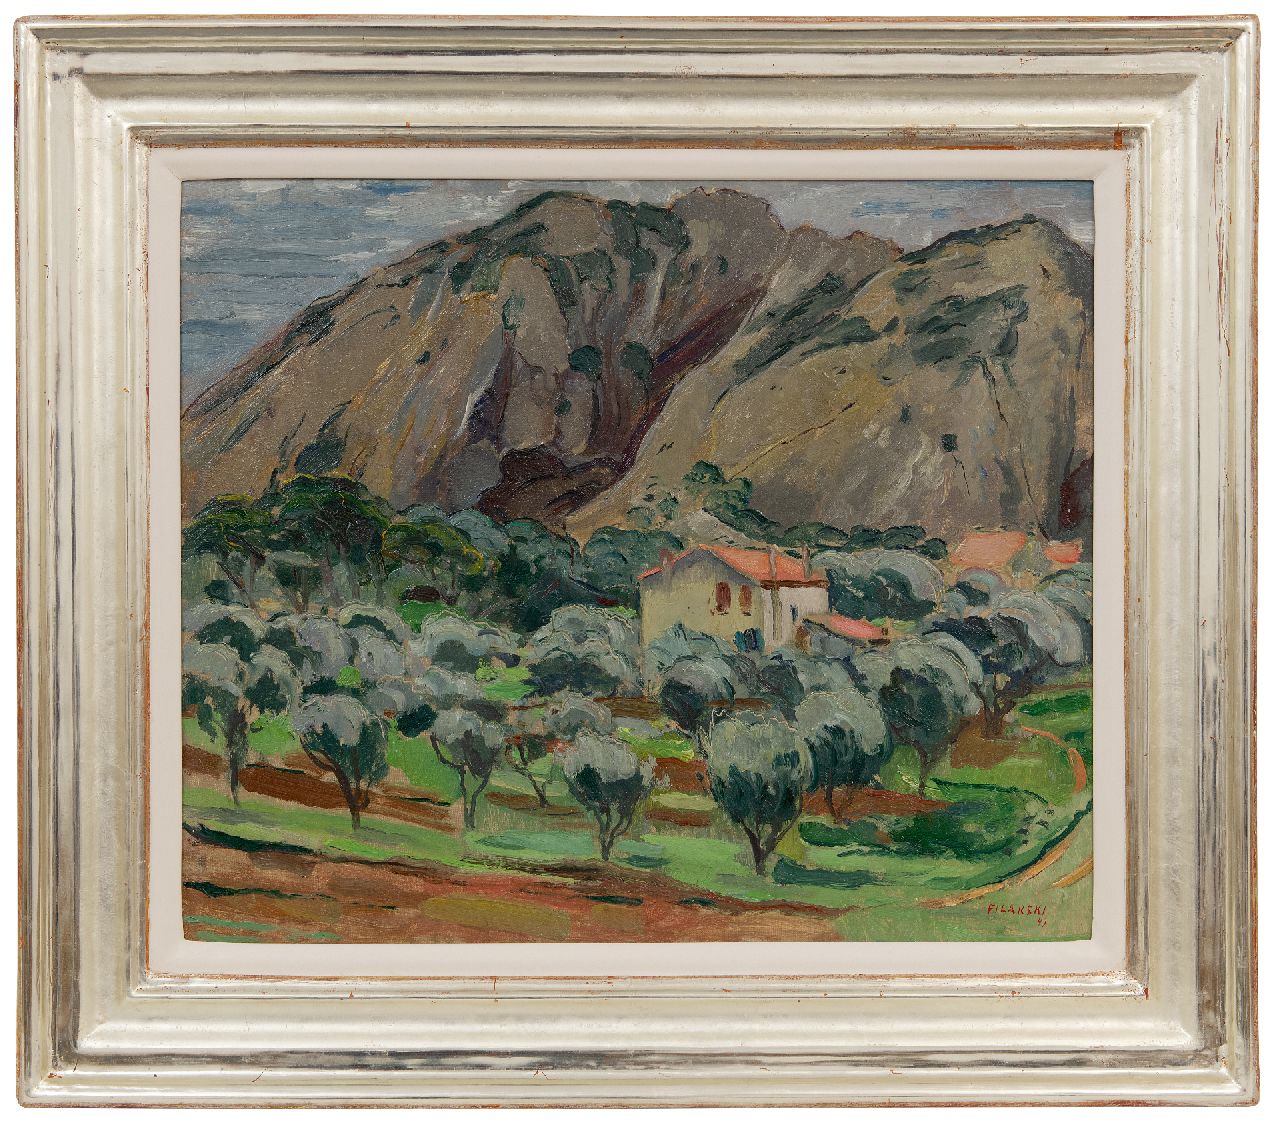 Filarski D.H.W.  | 'Dirk' Herman Willem Filarski | Schilderijen te koop aangeboden | Zuidelijk landschap, olieverf op doek 45,6 x 54,8 cm, gesigneerd rechtsonder en gedateerd '49